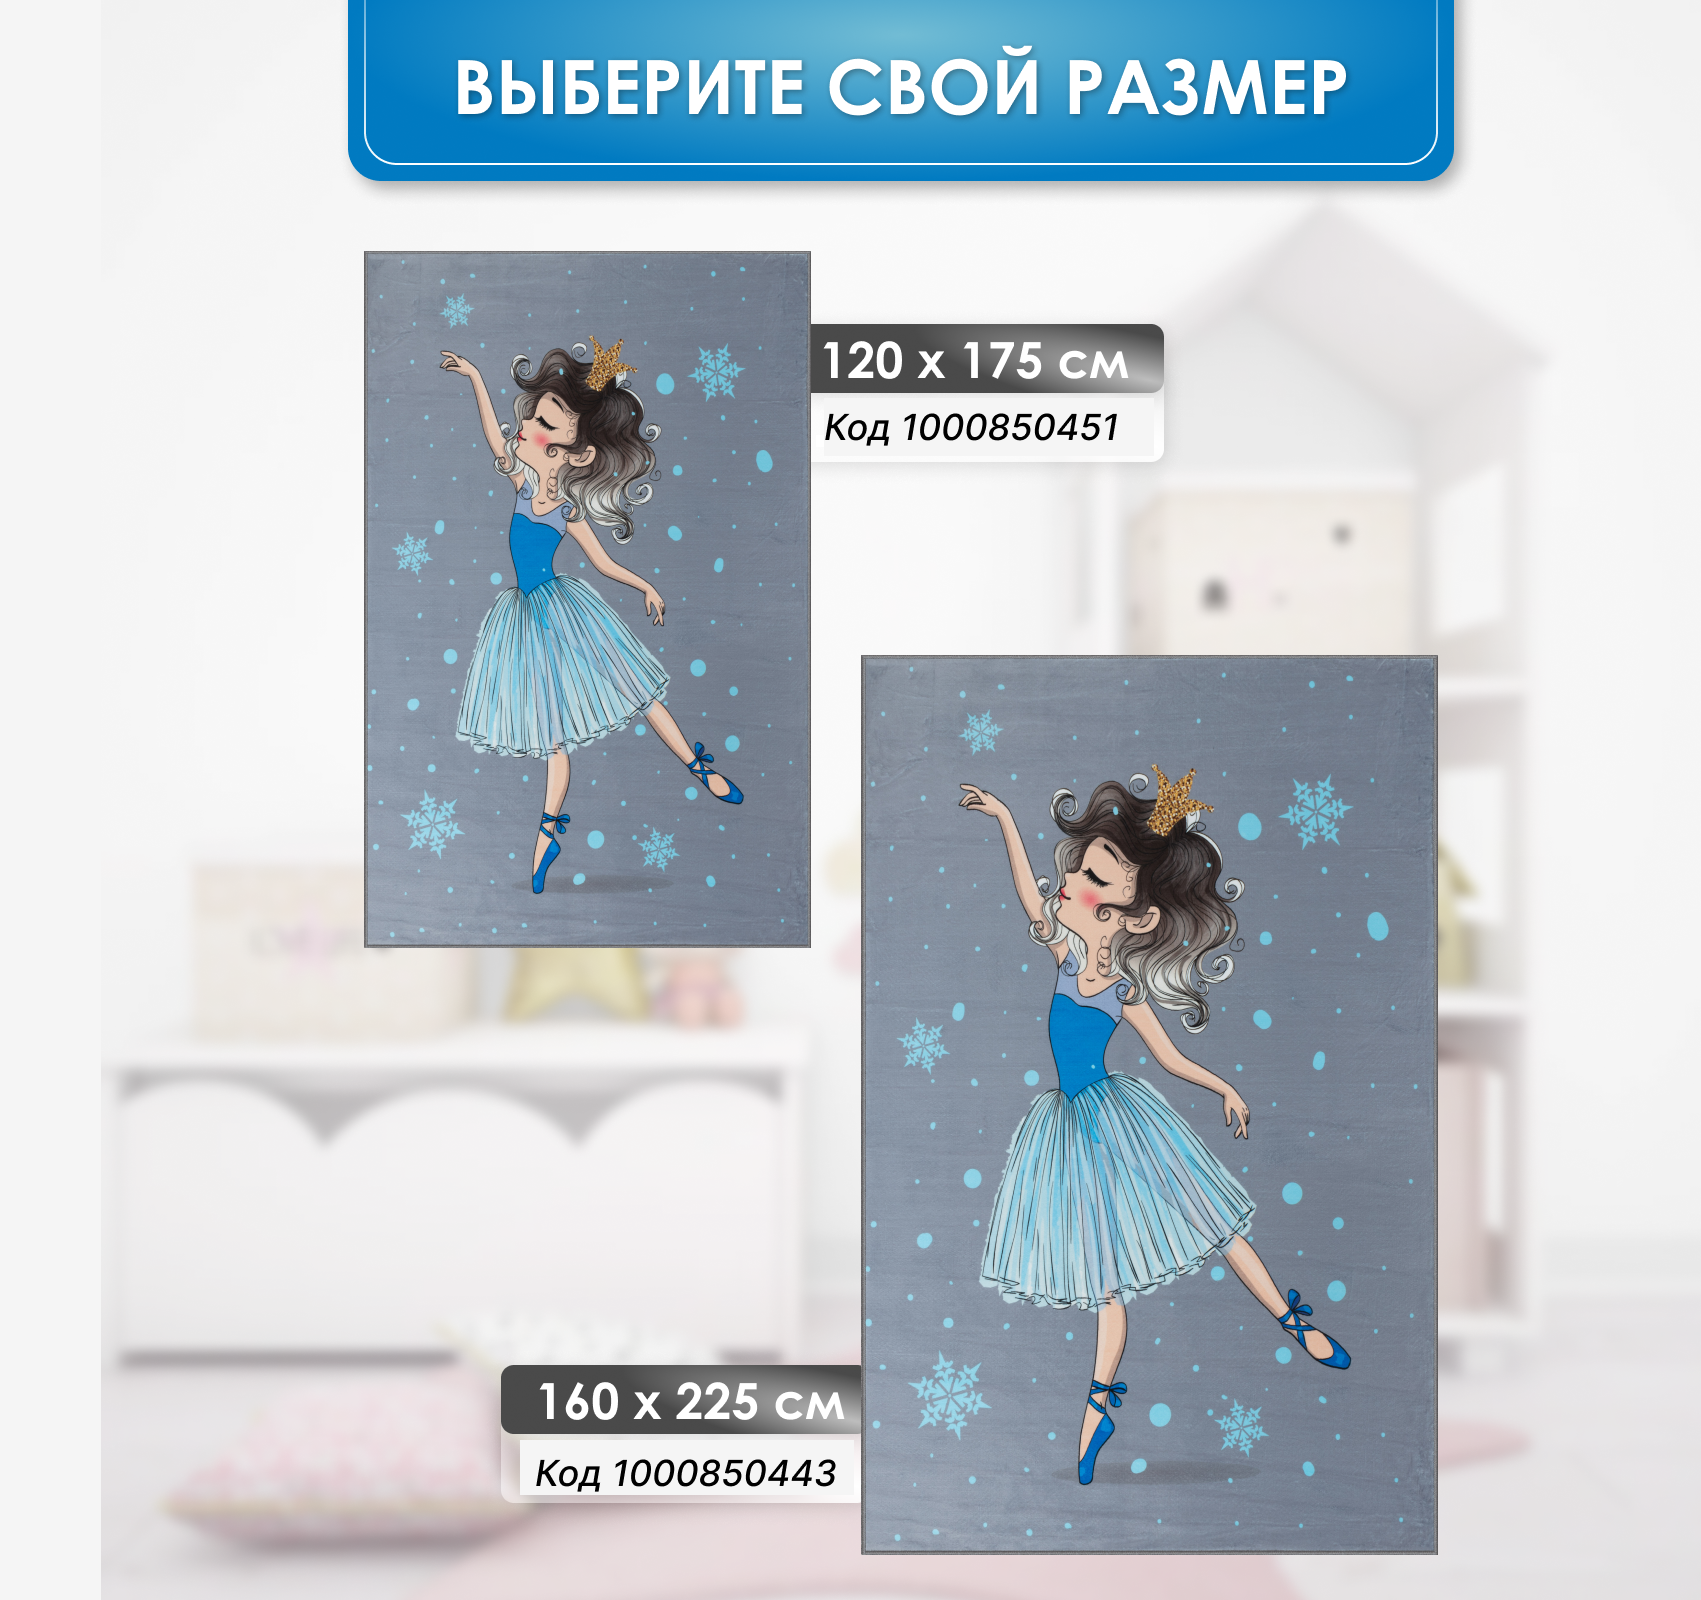 Ковер комнатный детский KOVRIKANA балерина снежинка 120см на 175см - фото 7